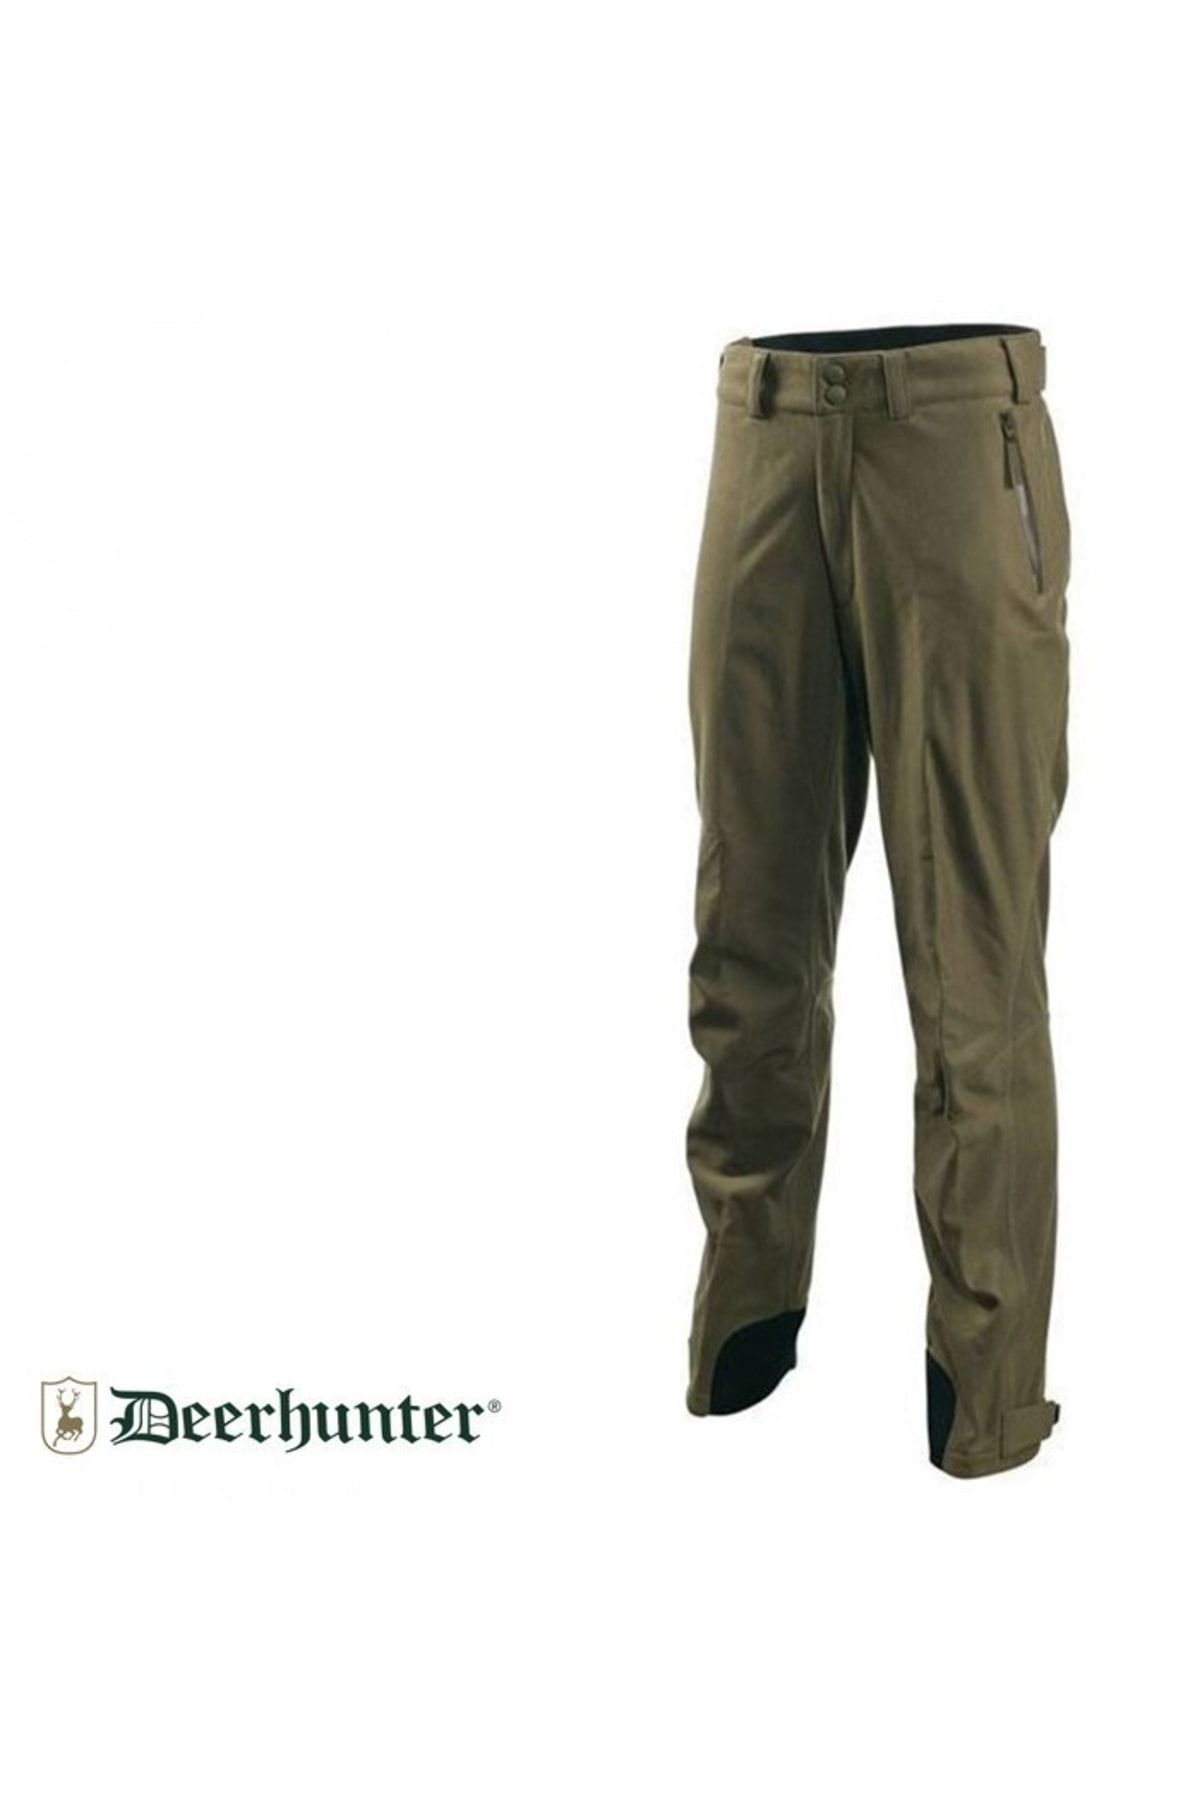 Deerhunter S.k. Tempest 375 Dh Ivy Yeşil Pantolon L